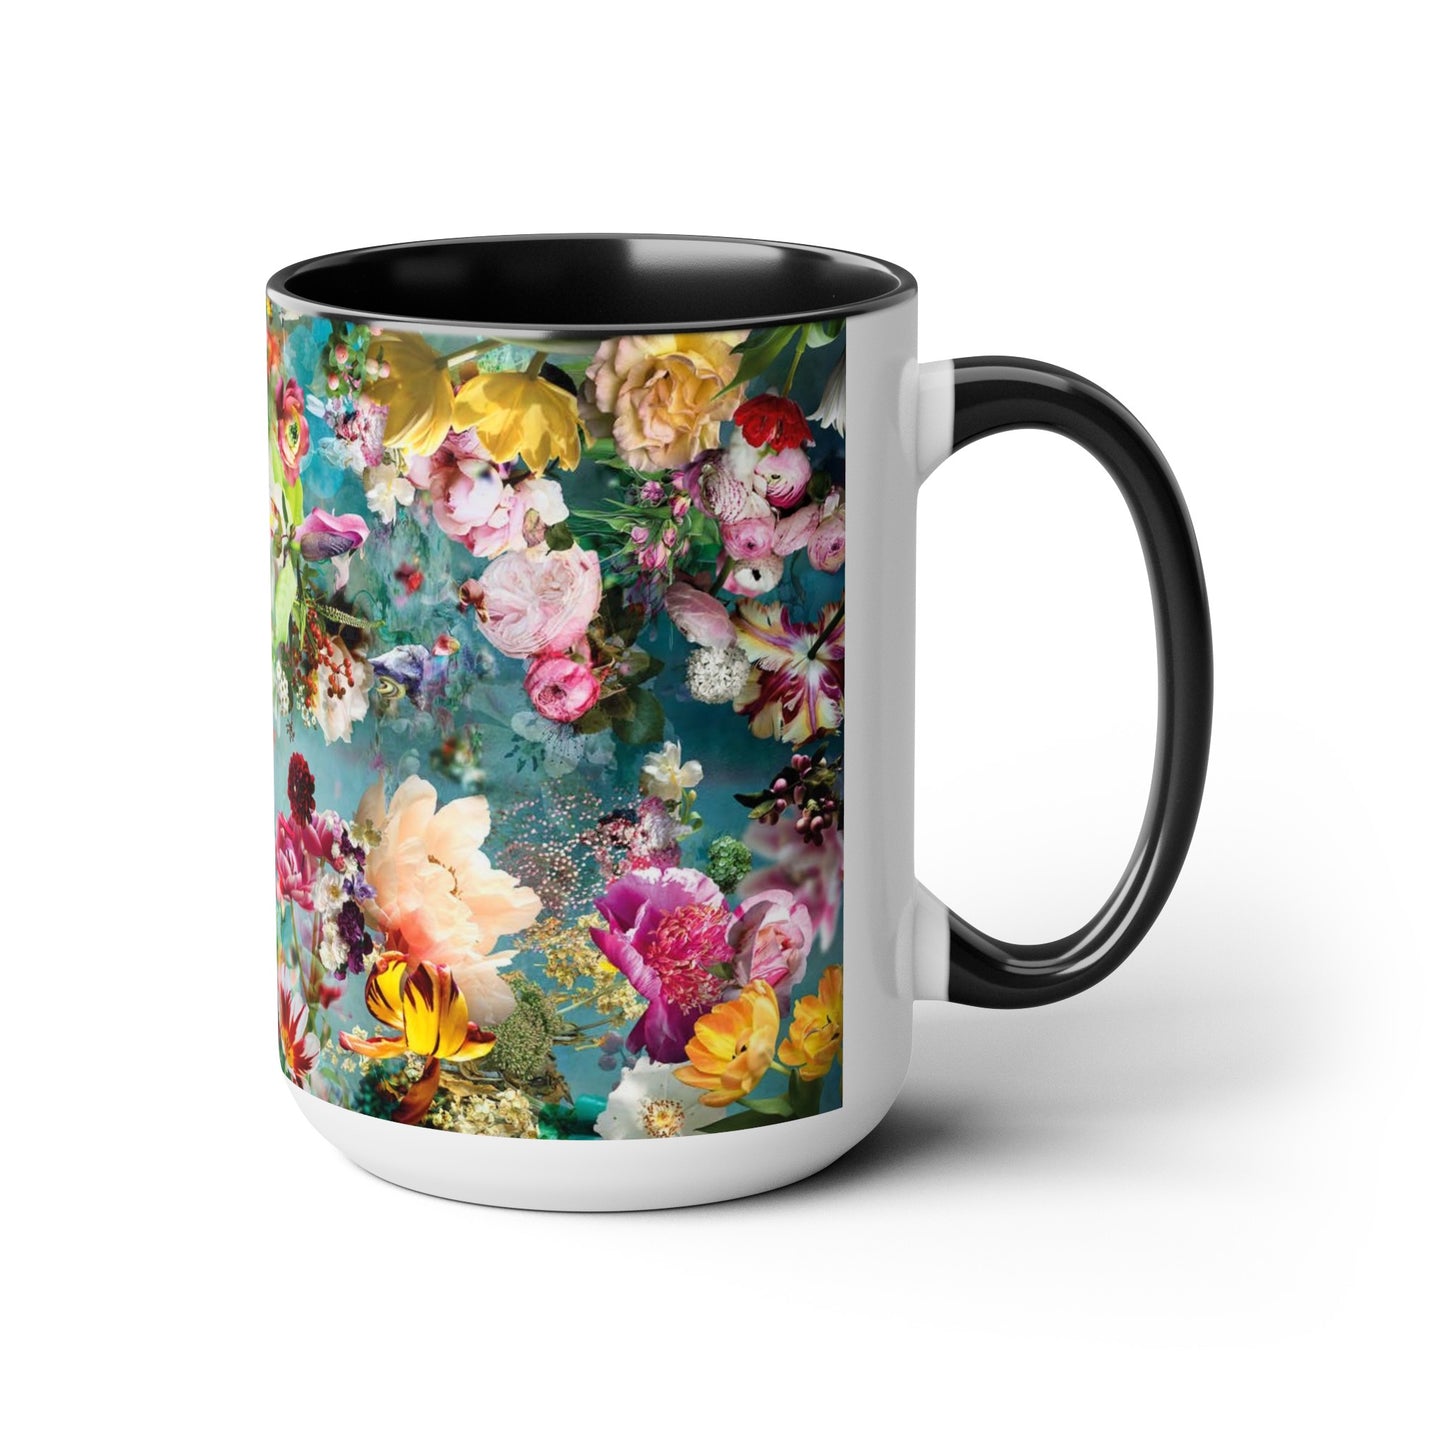 Flowers Two-Tone Coffee Mugs, 15oz